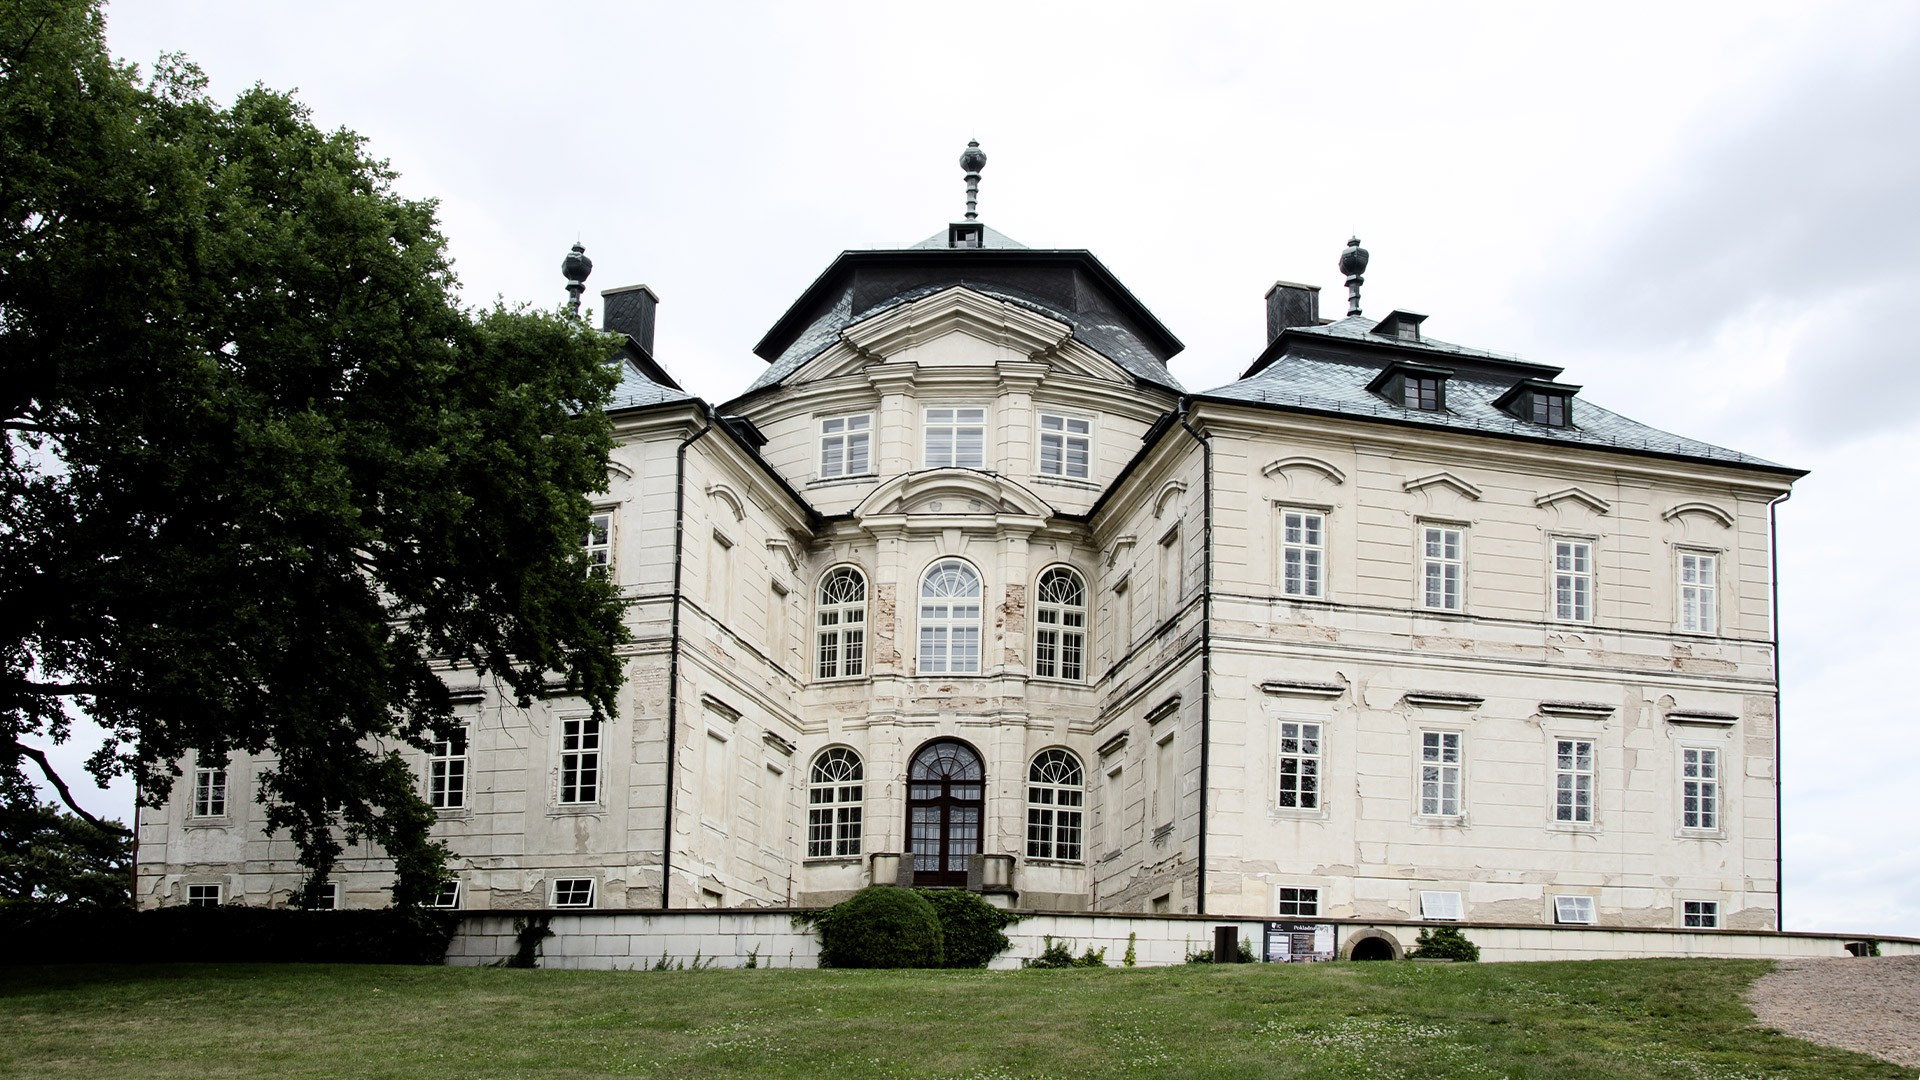 Castle Karlova Koruna | Chl. n. Cidlinou, Czech Republic